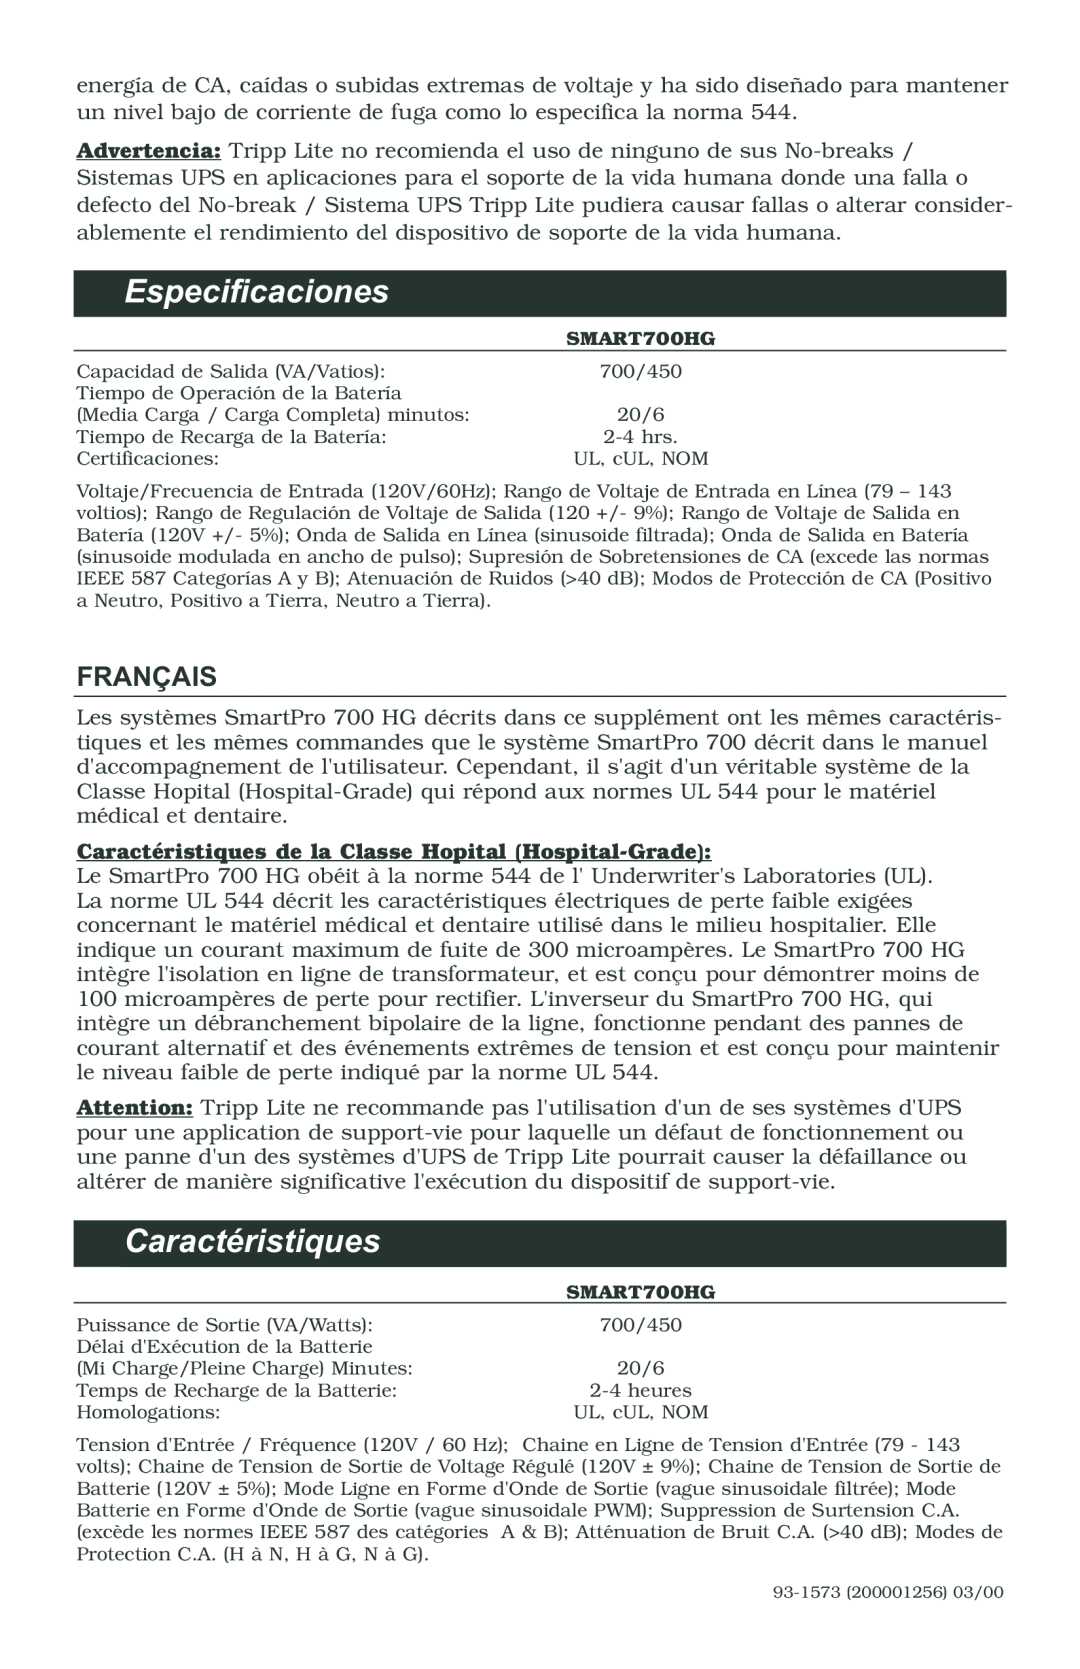 Tripp Lite 700 HG owner manual Especificaciones, Français, Caractéristiques de la Classe Hopital Hospital-Grade 